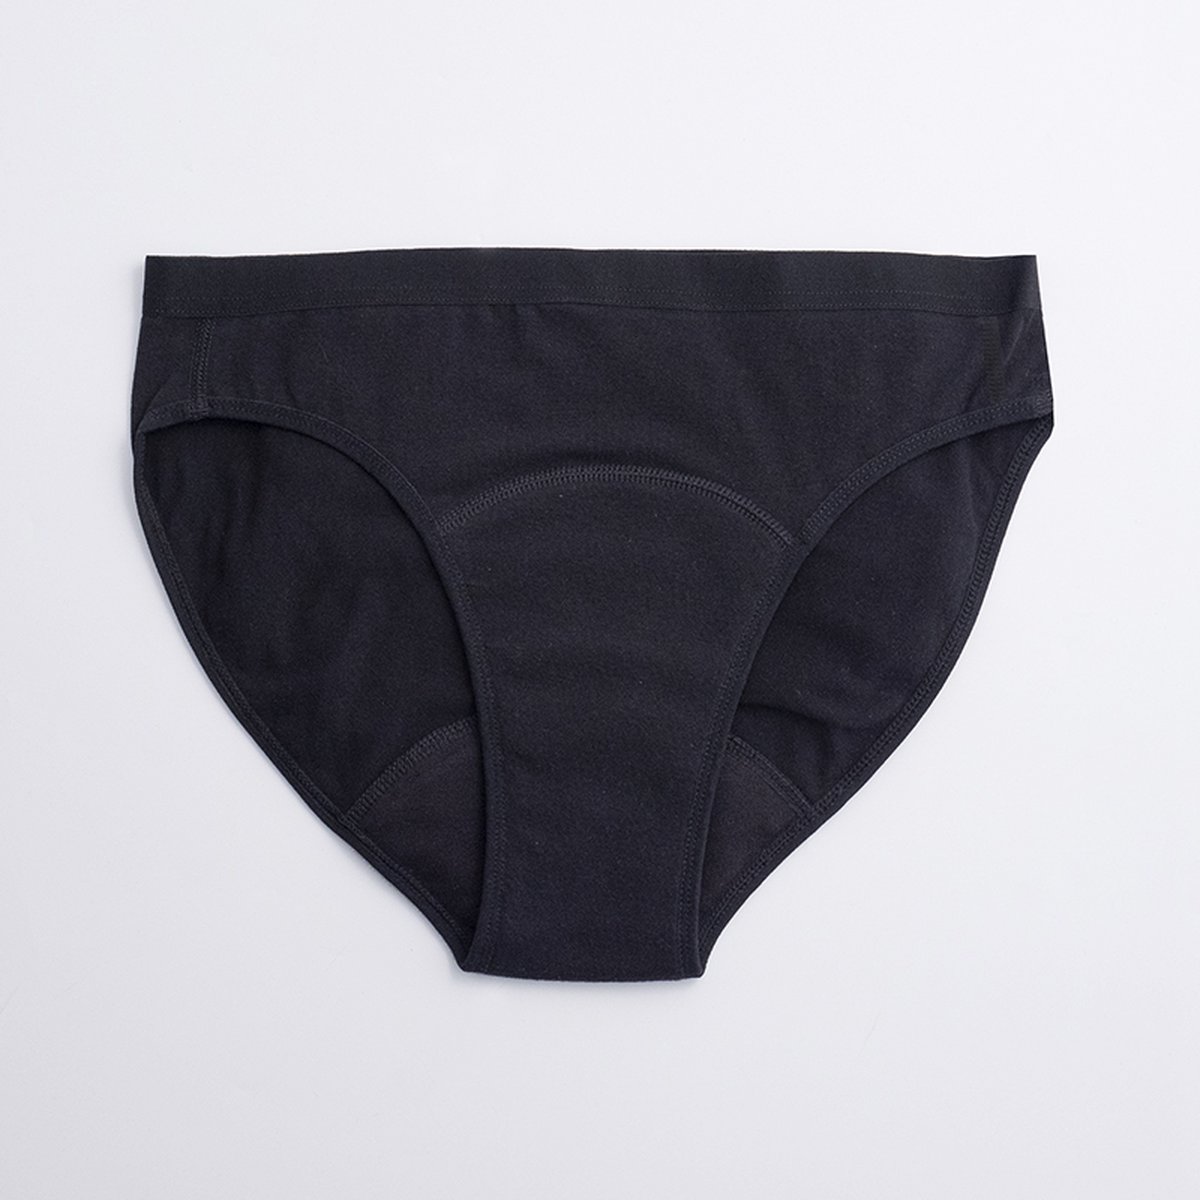 ImseVimse - Imse - menstruatieondergoed - Bikini model period underwear - matige menstruatie - M - eur 40/42 - zwart